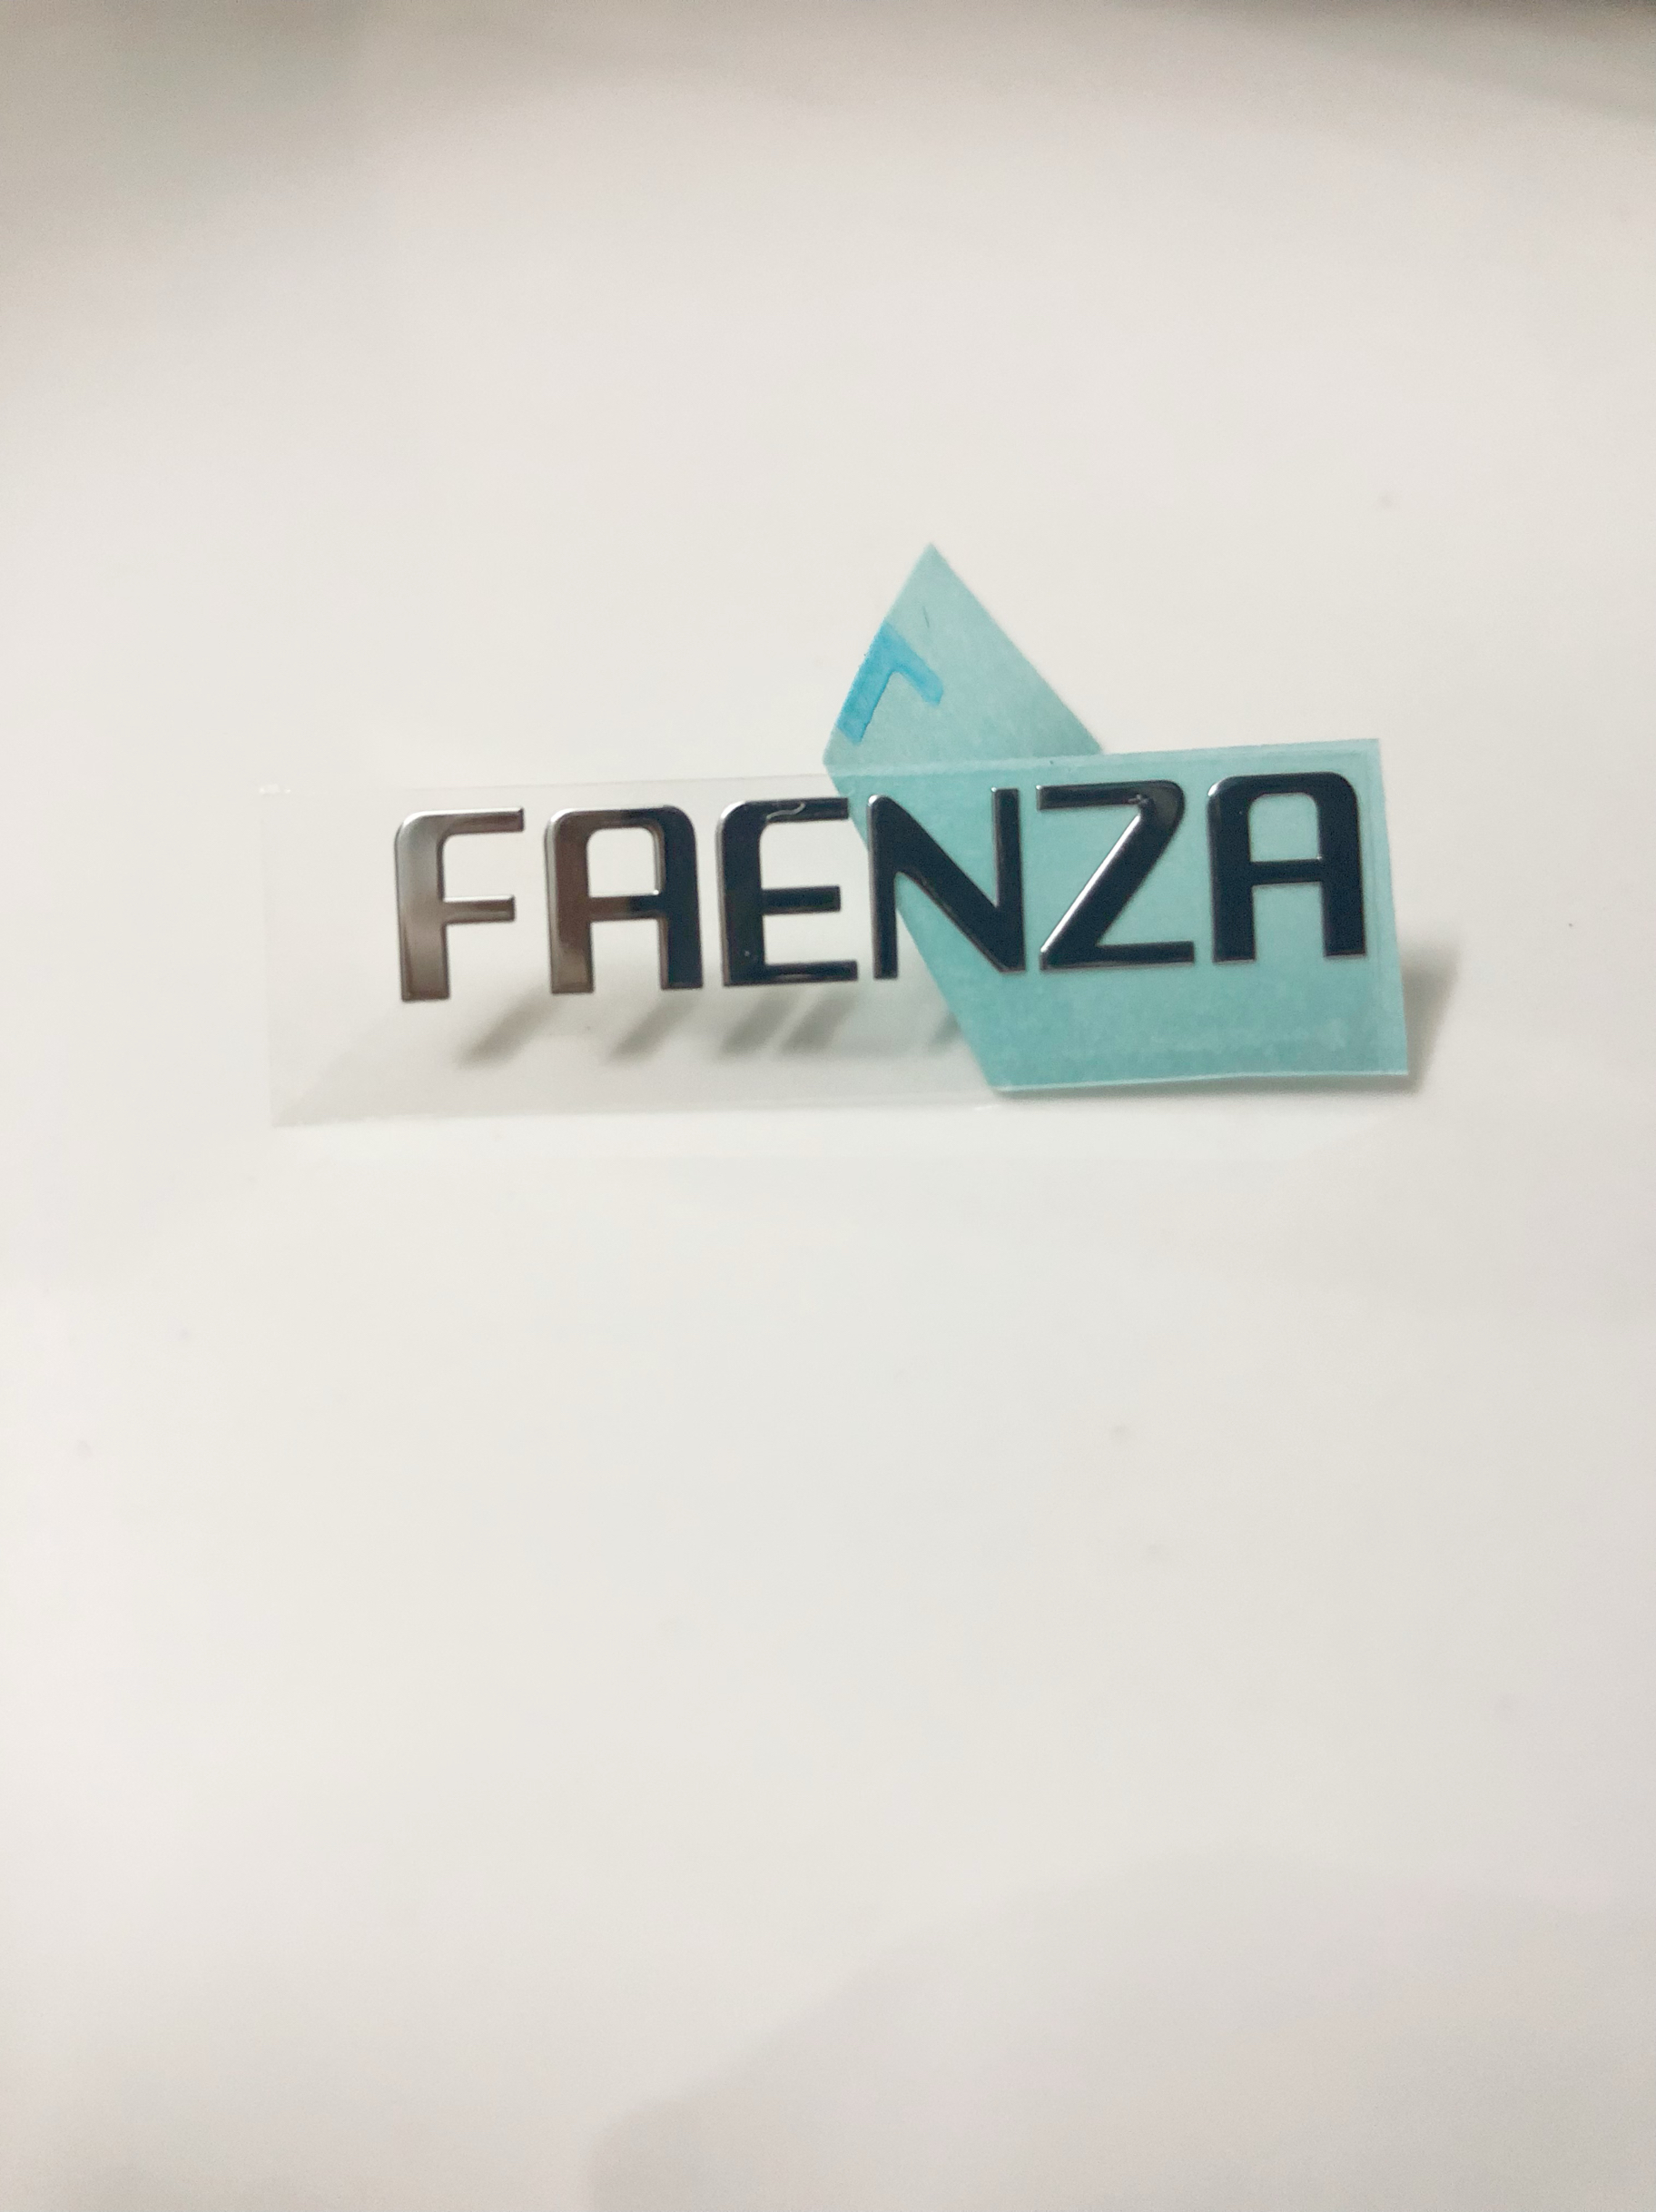 法恩莎FAENZA小尺寸现货银色logo金属贴橱柜卫浴标牌商标装饰贴纸